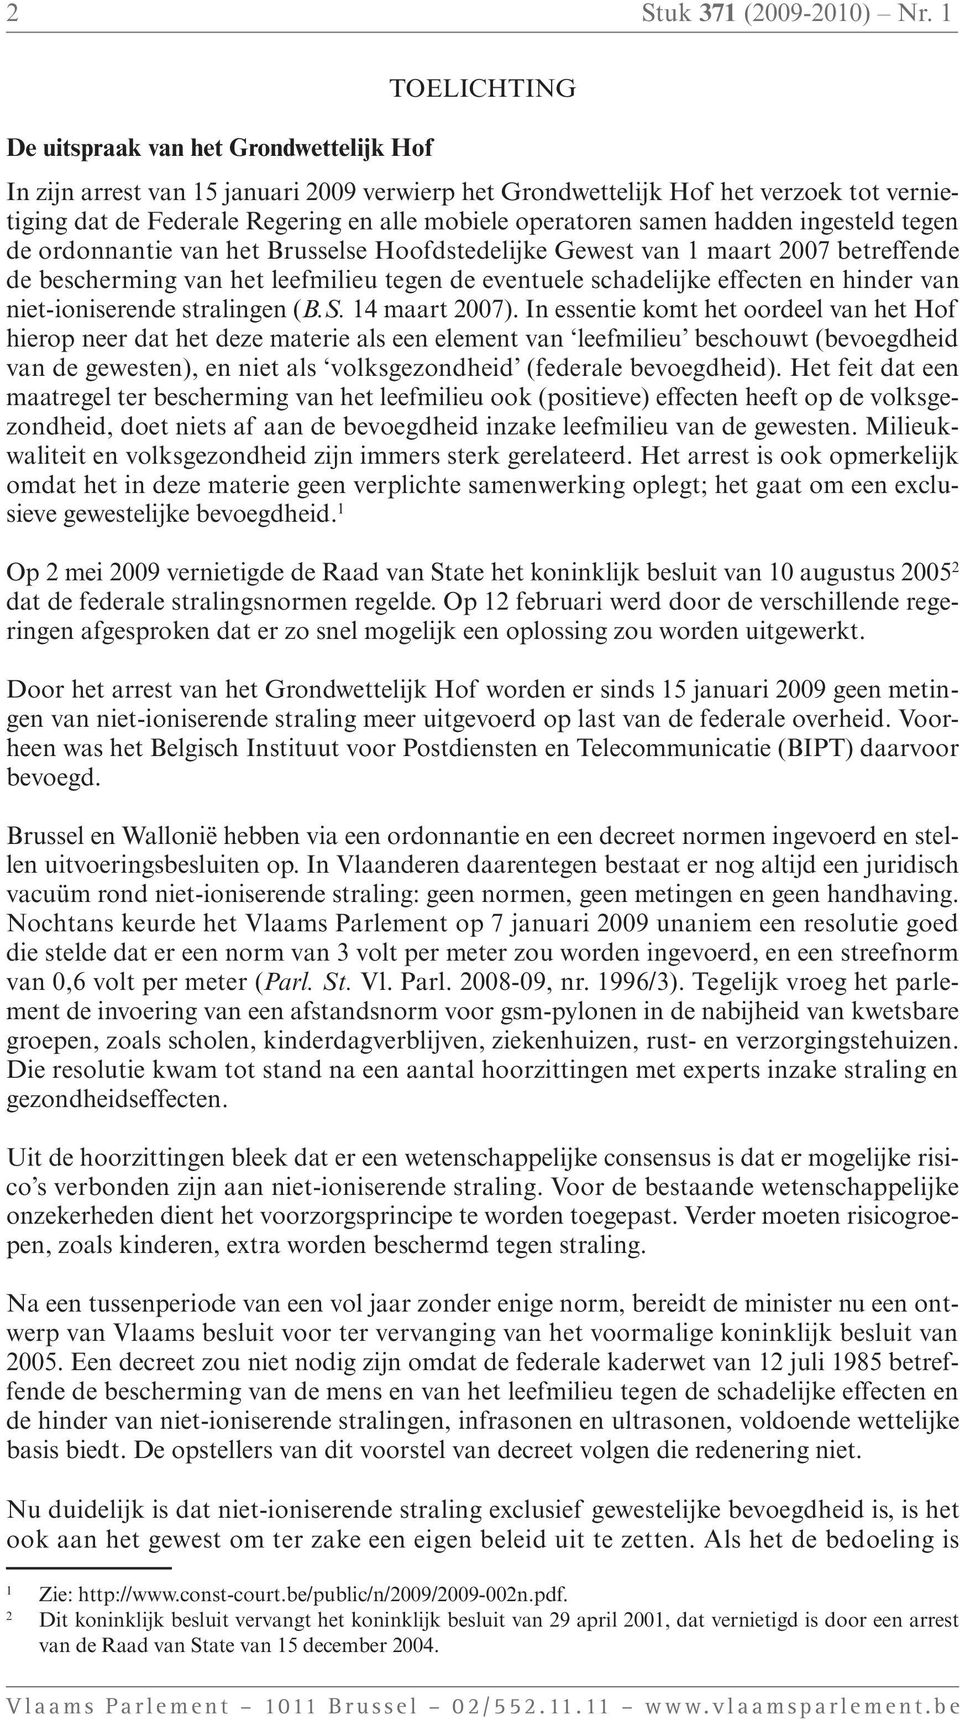 operatoren samen hadden ingesteld tegen de ordonnantie van het Brusselse Hoofdstedelijke Gewest van 1 maart 2007 betreffende de bescherming van het leefmilieu tegen de eventuele schadelijke effecten